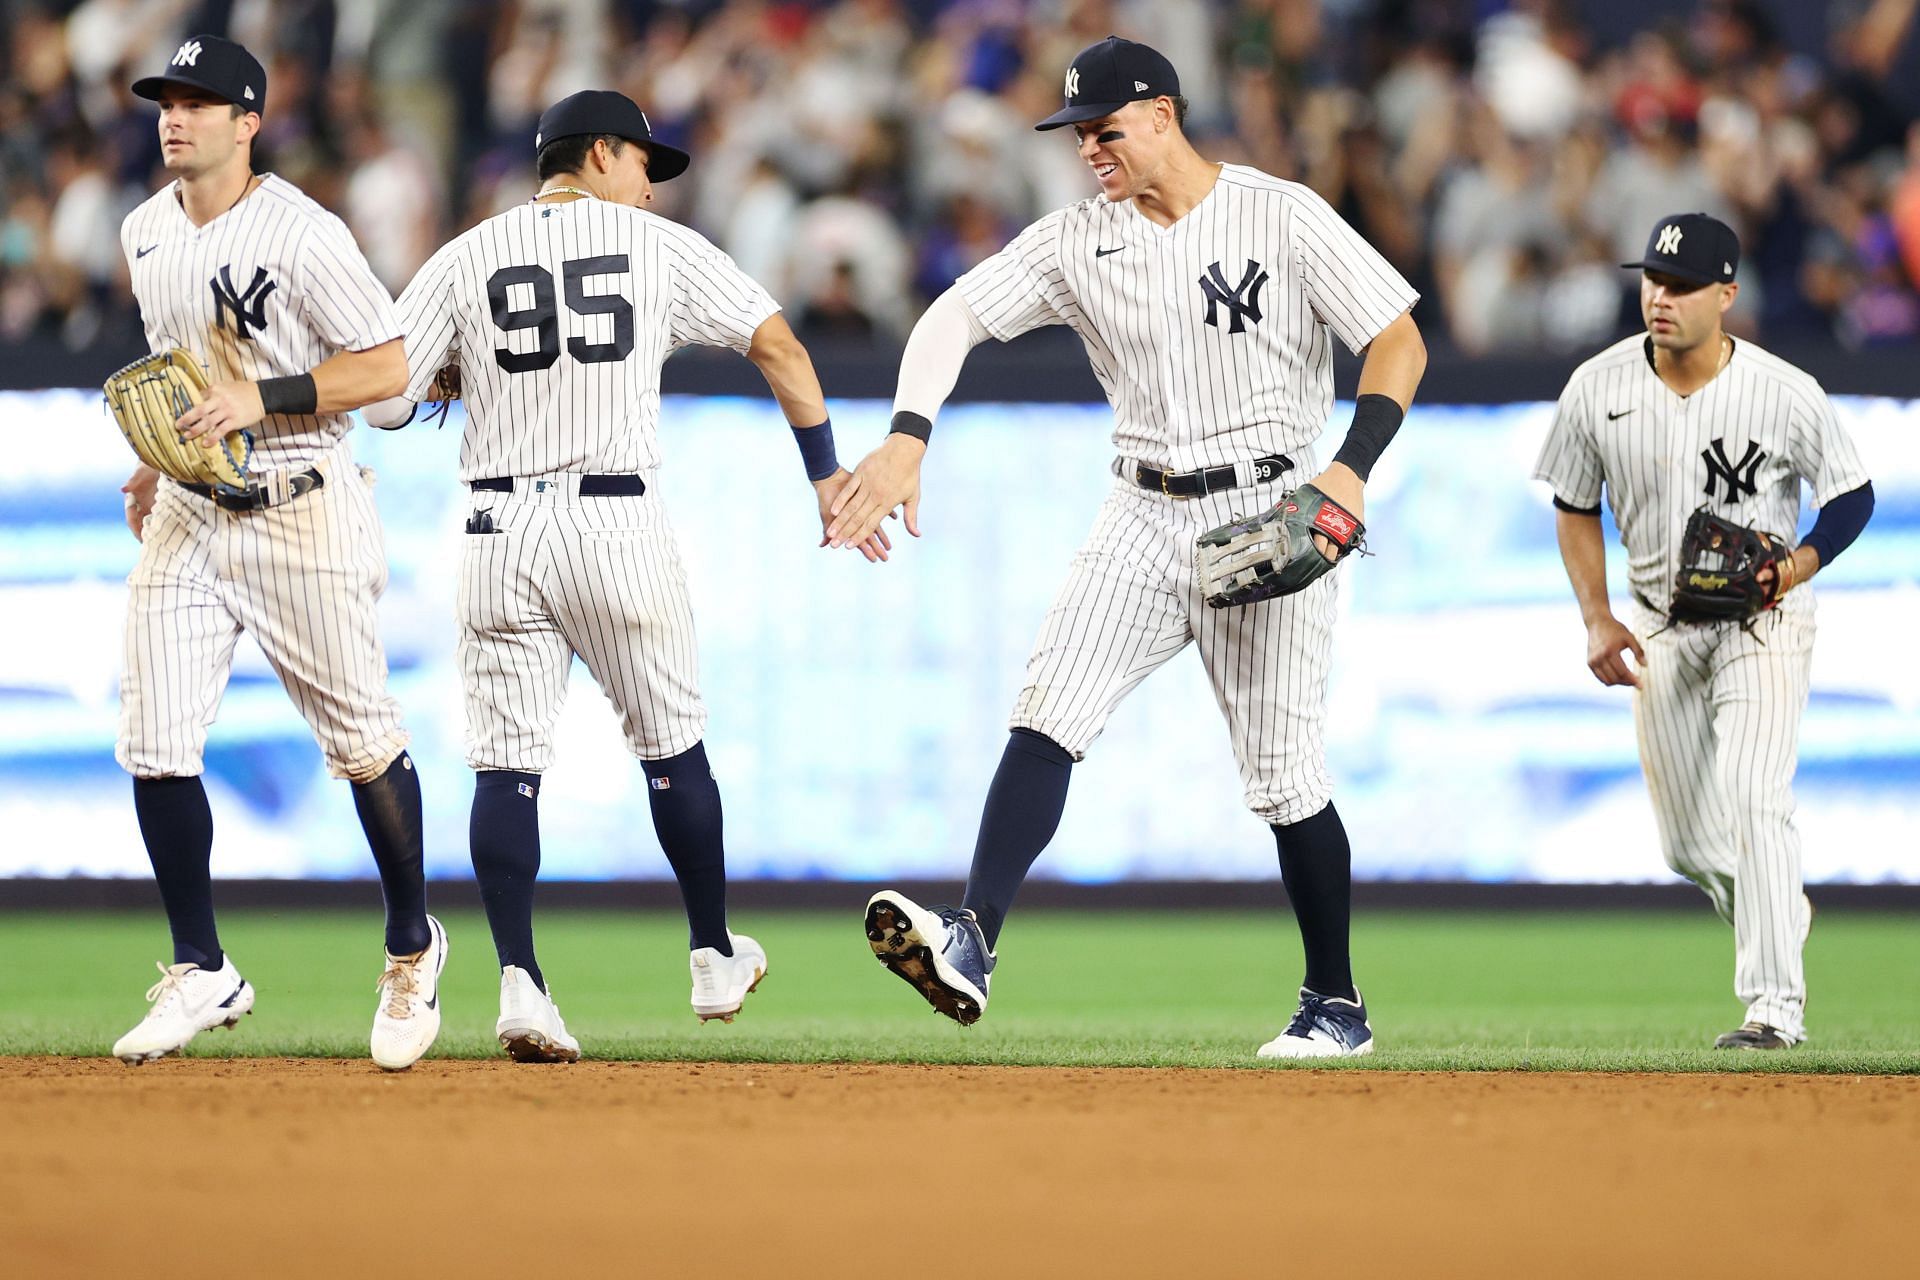 New York Mets v New York Yankees